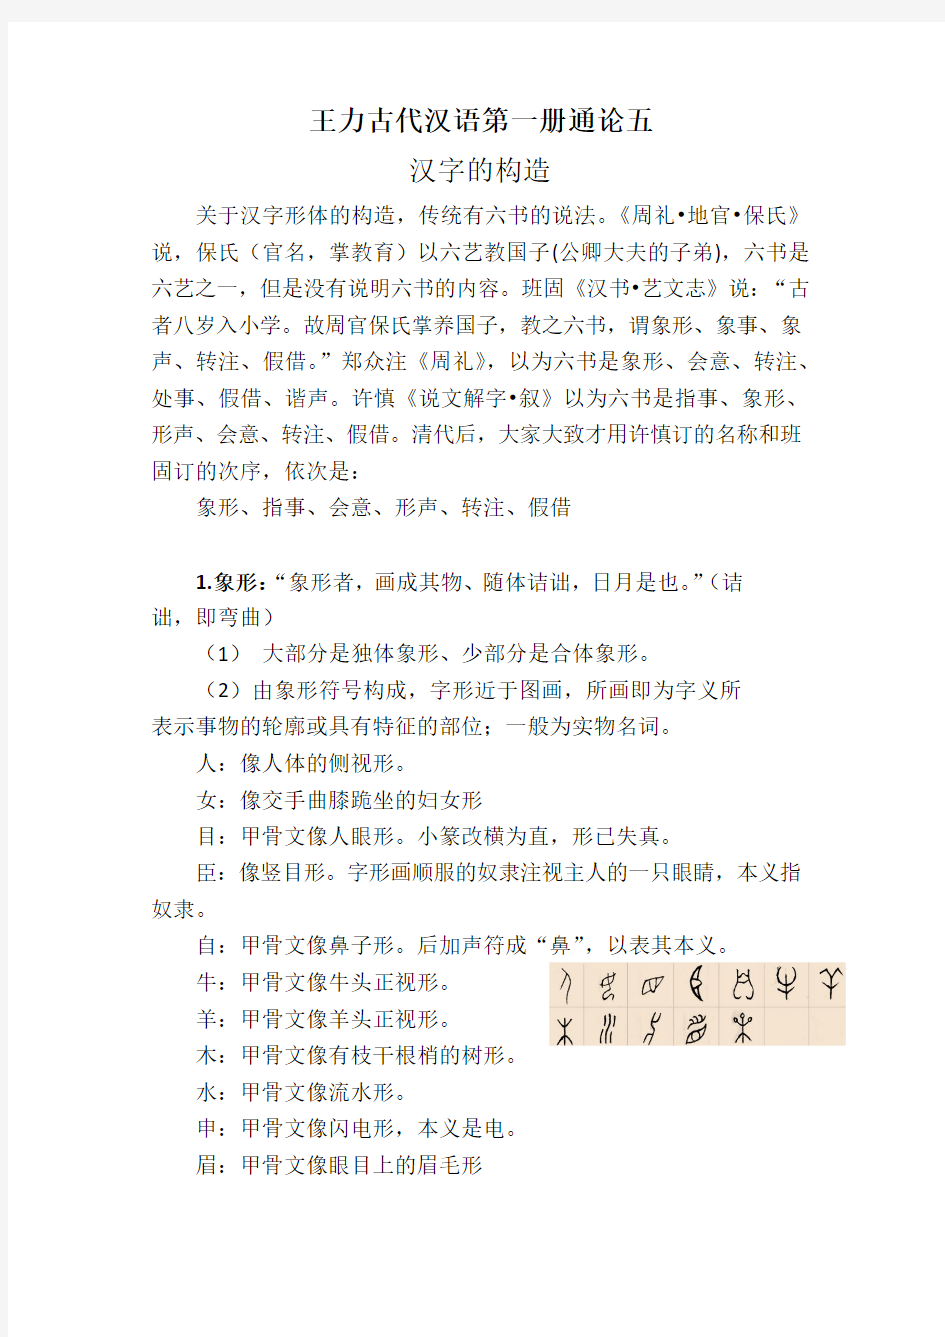 王力古代汉语第一册通论五